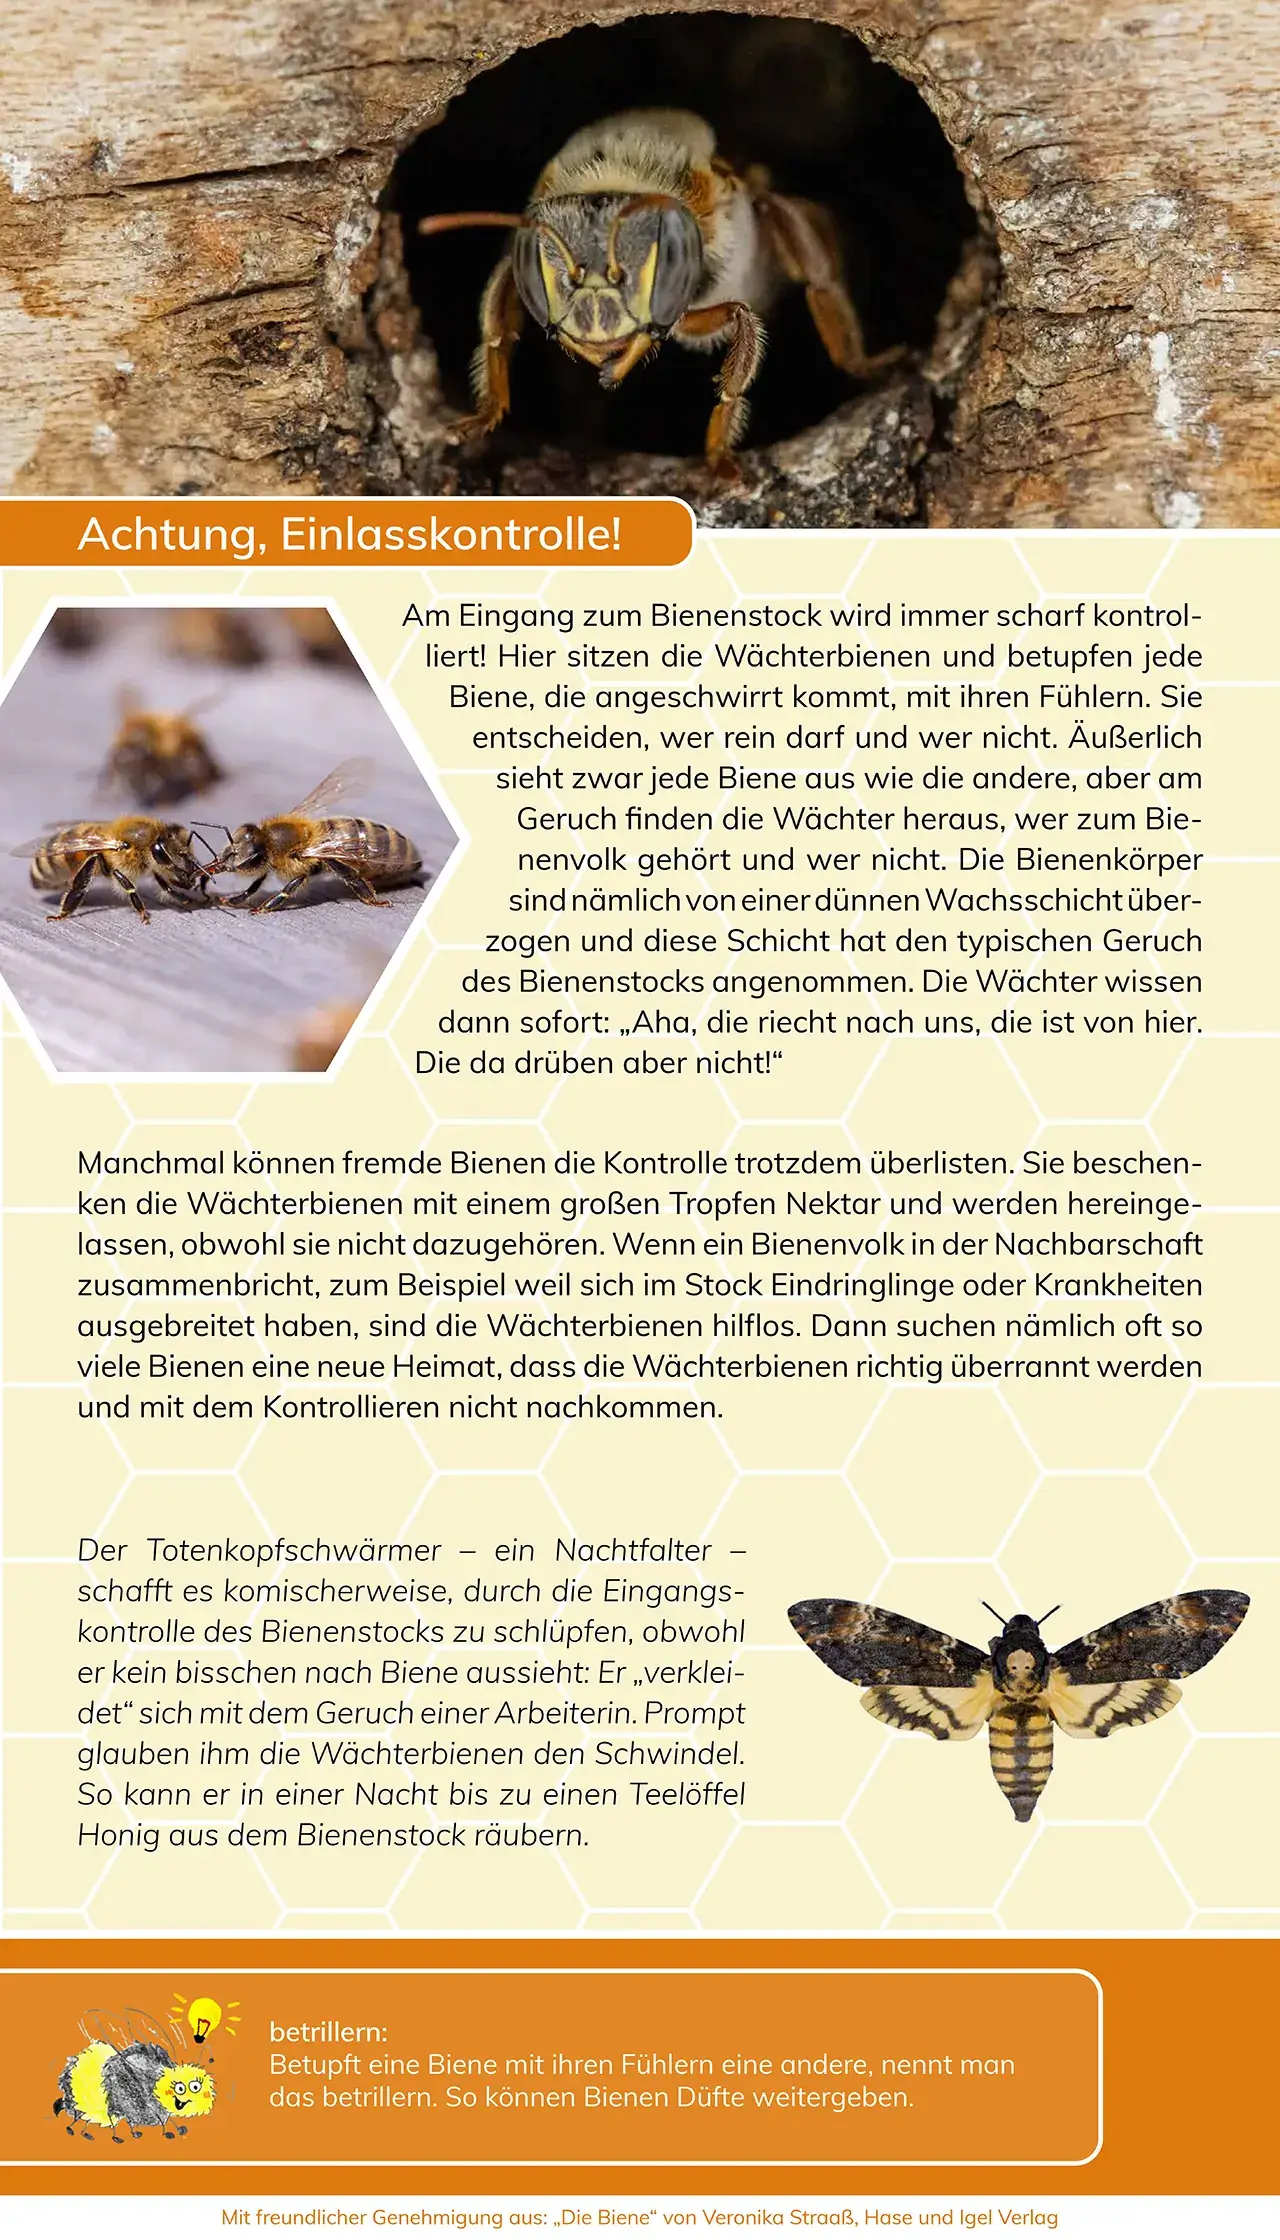 Projekte 2020 - Ausstellung - Mit den Bienen durch das Jahr - Achtung, Einlasskontrolle